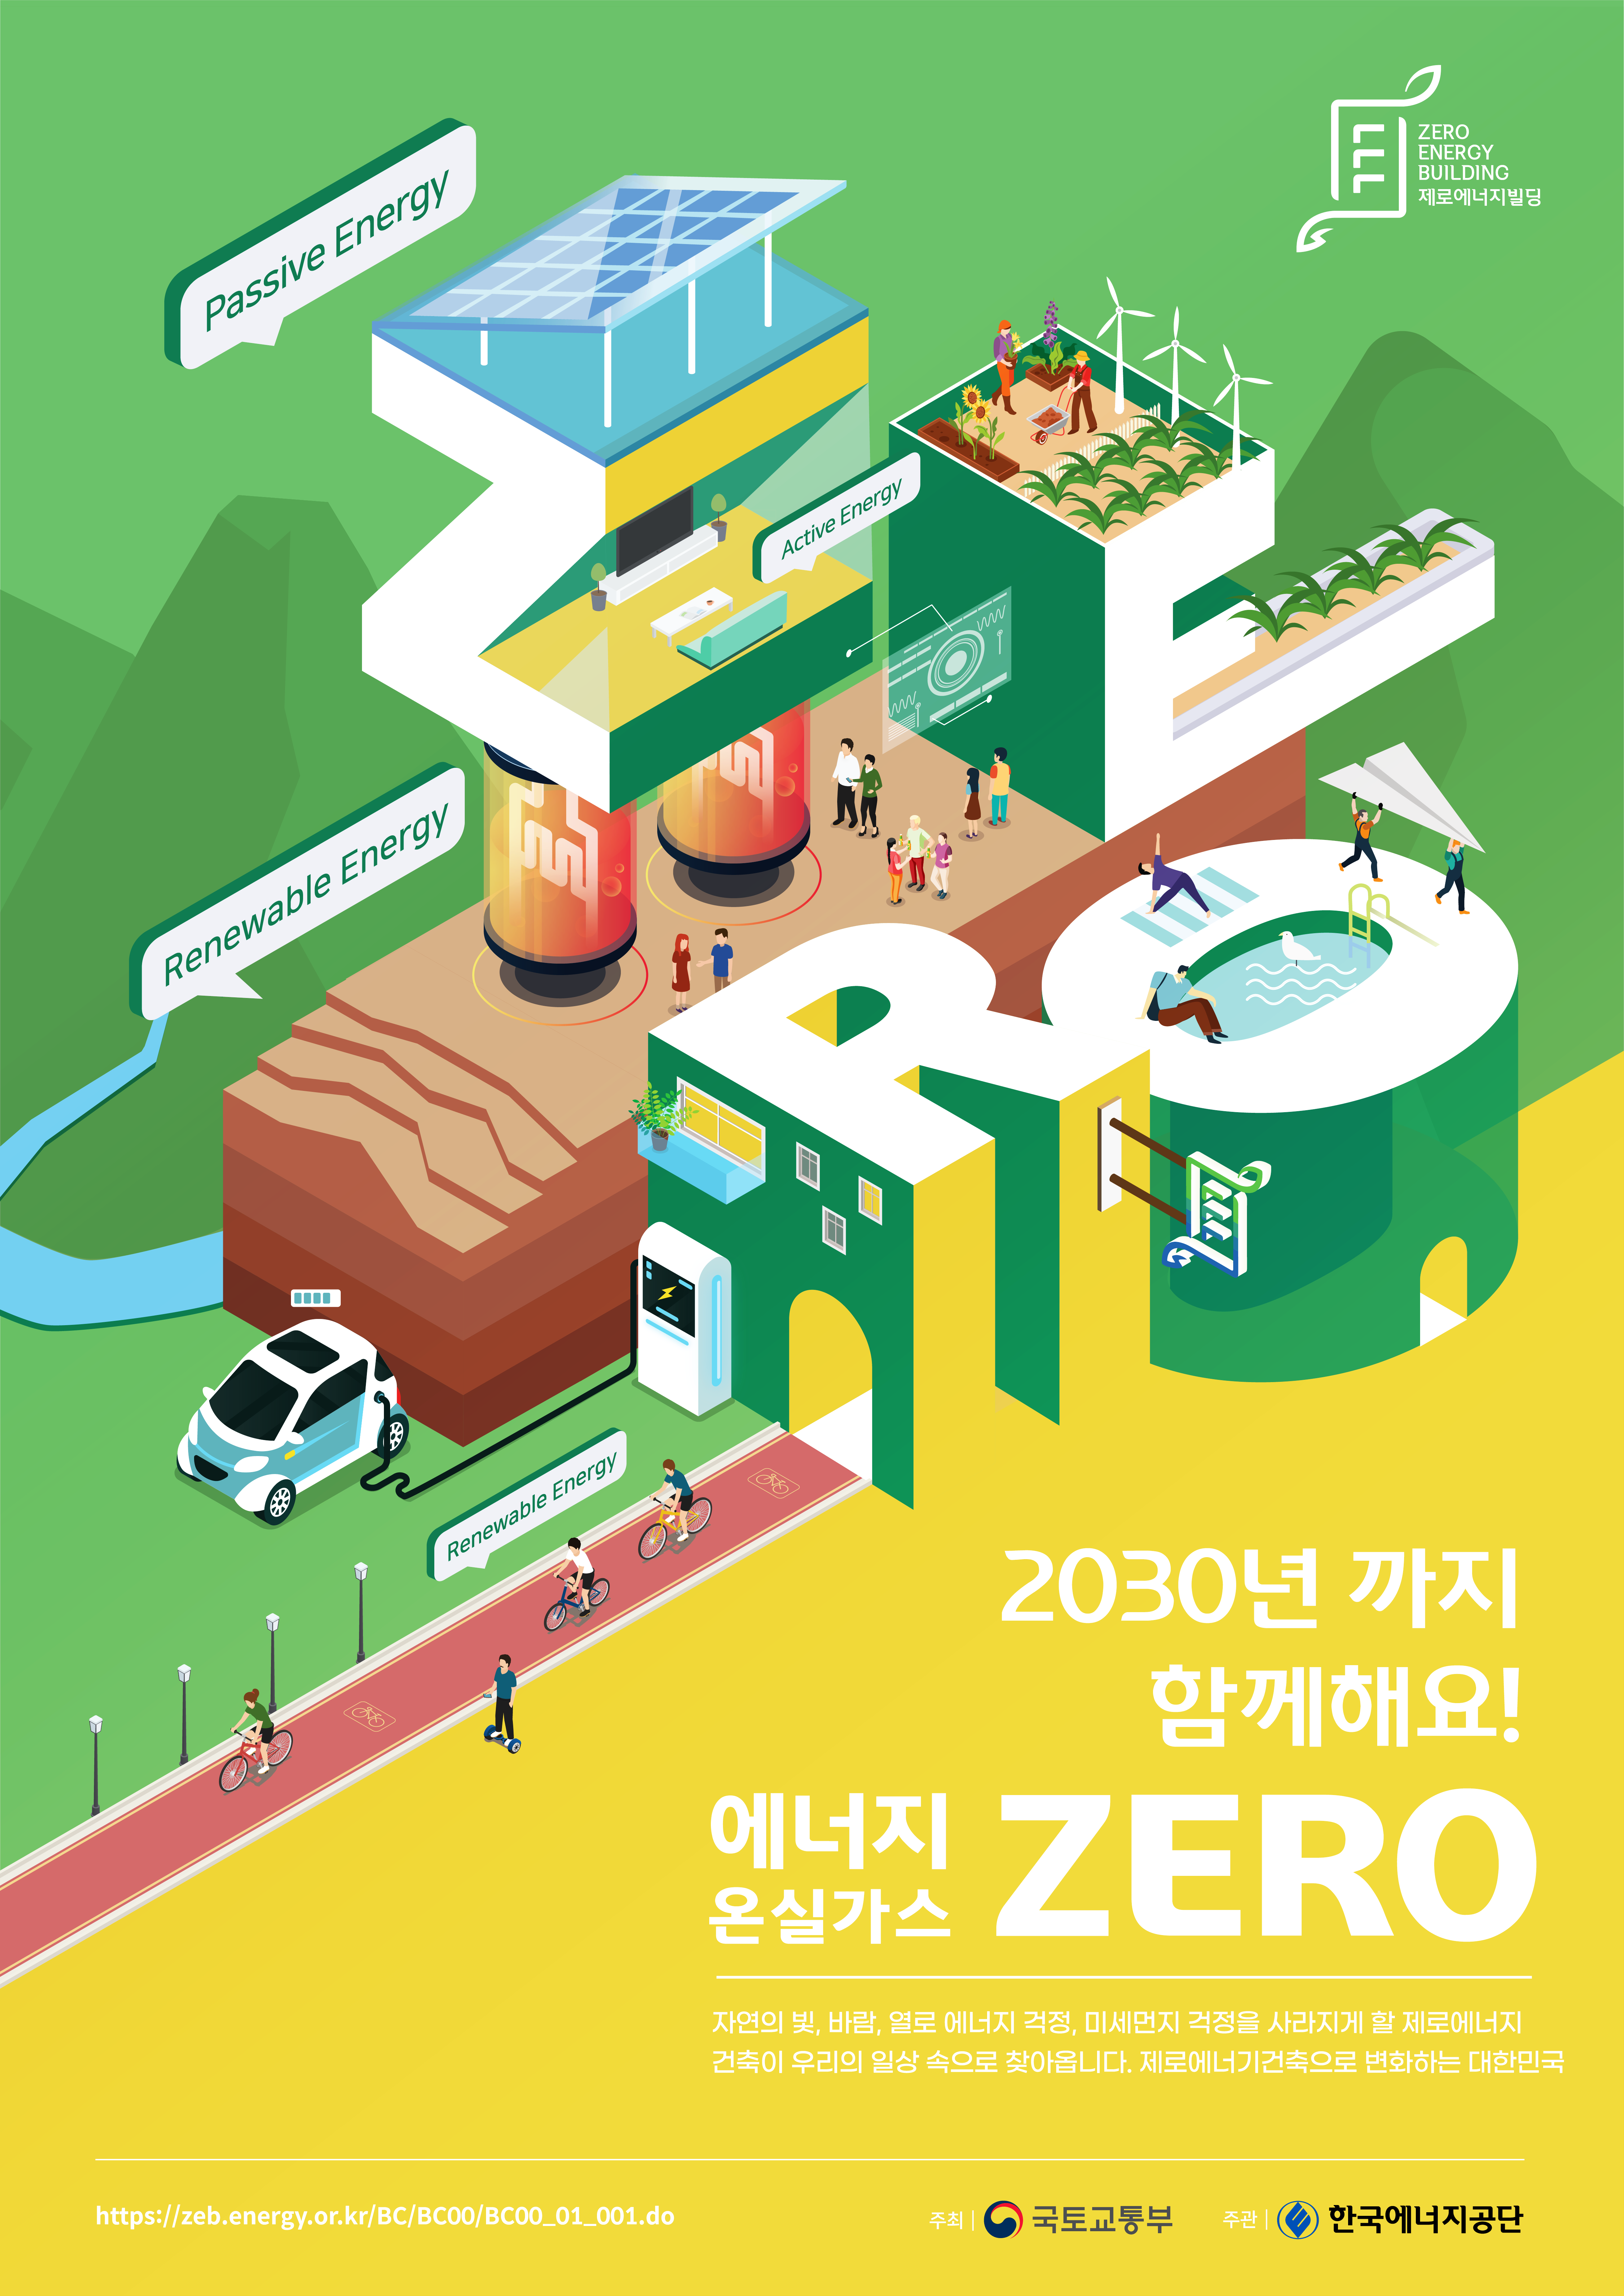 2020 제로에너지건축 홍보 콘텐츠 공모전 대상(광고디자인) - 제로에너지건축, 일상으로